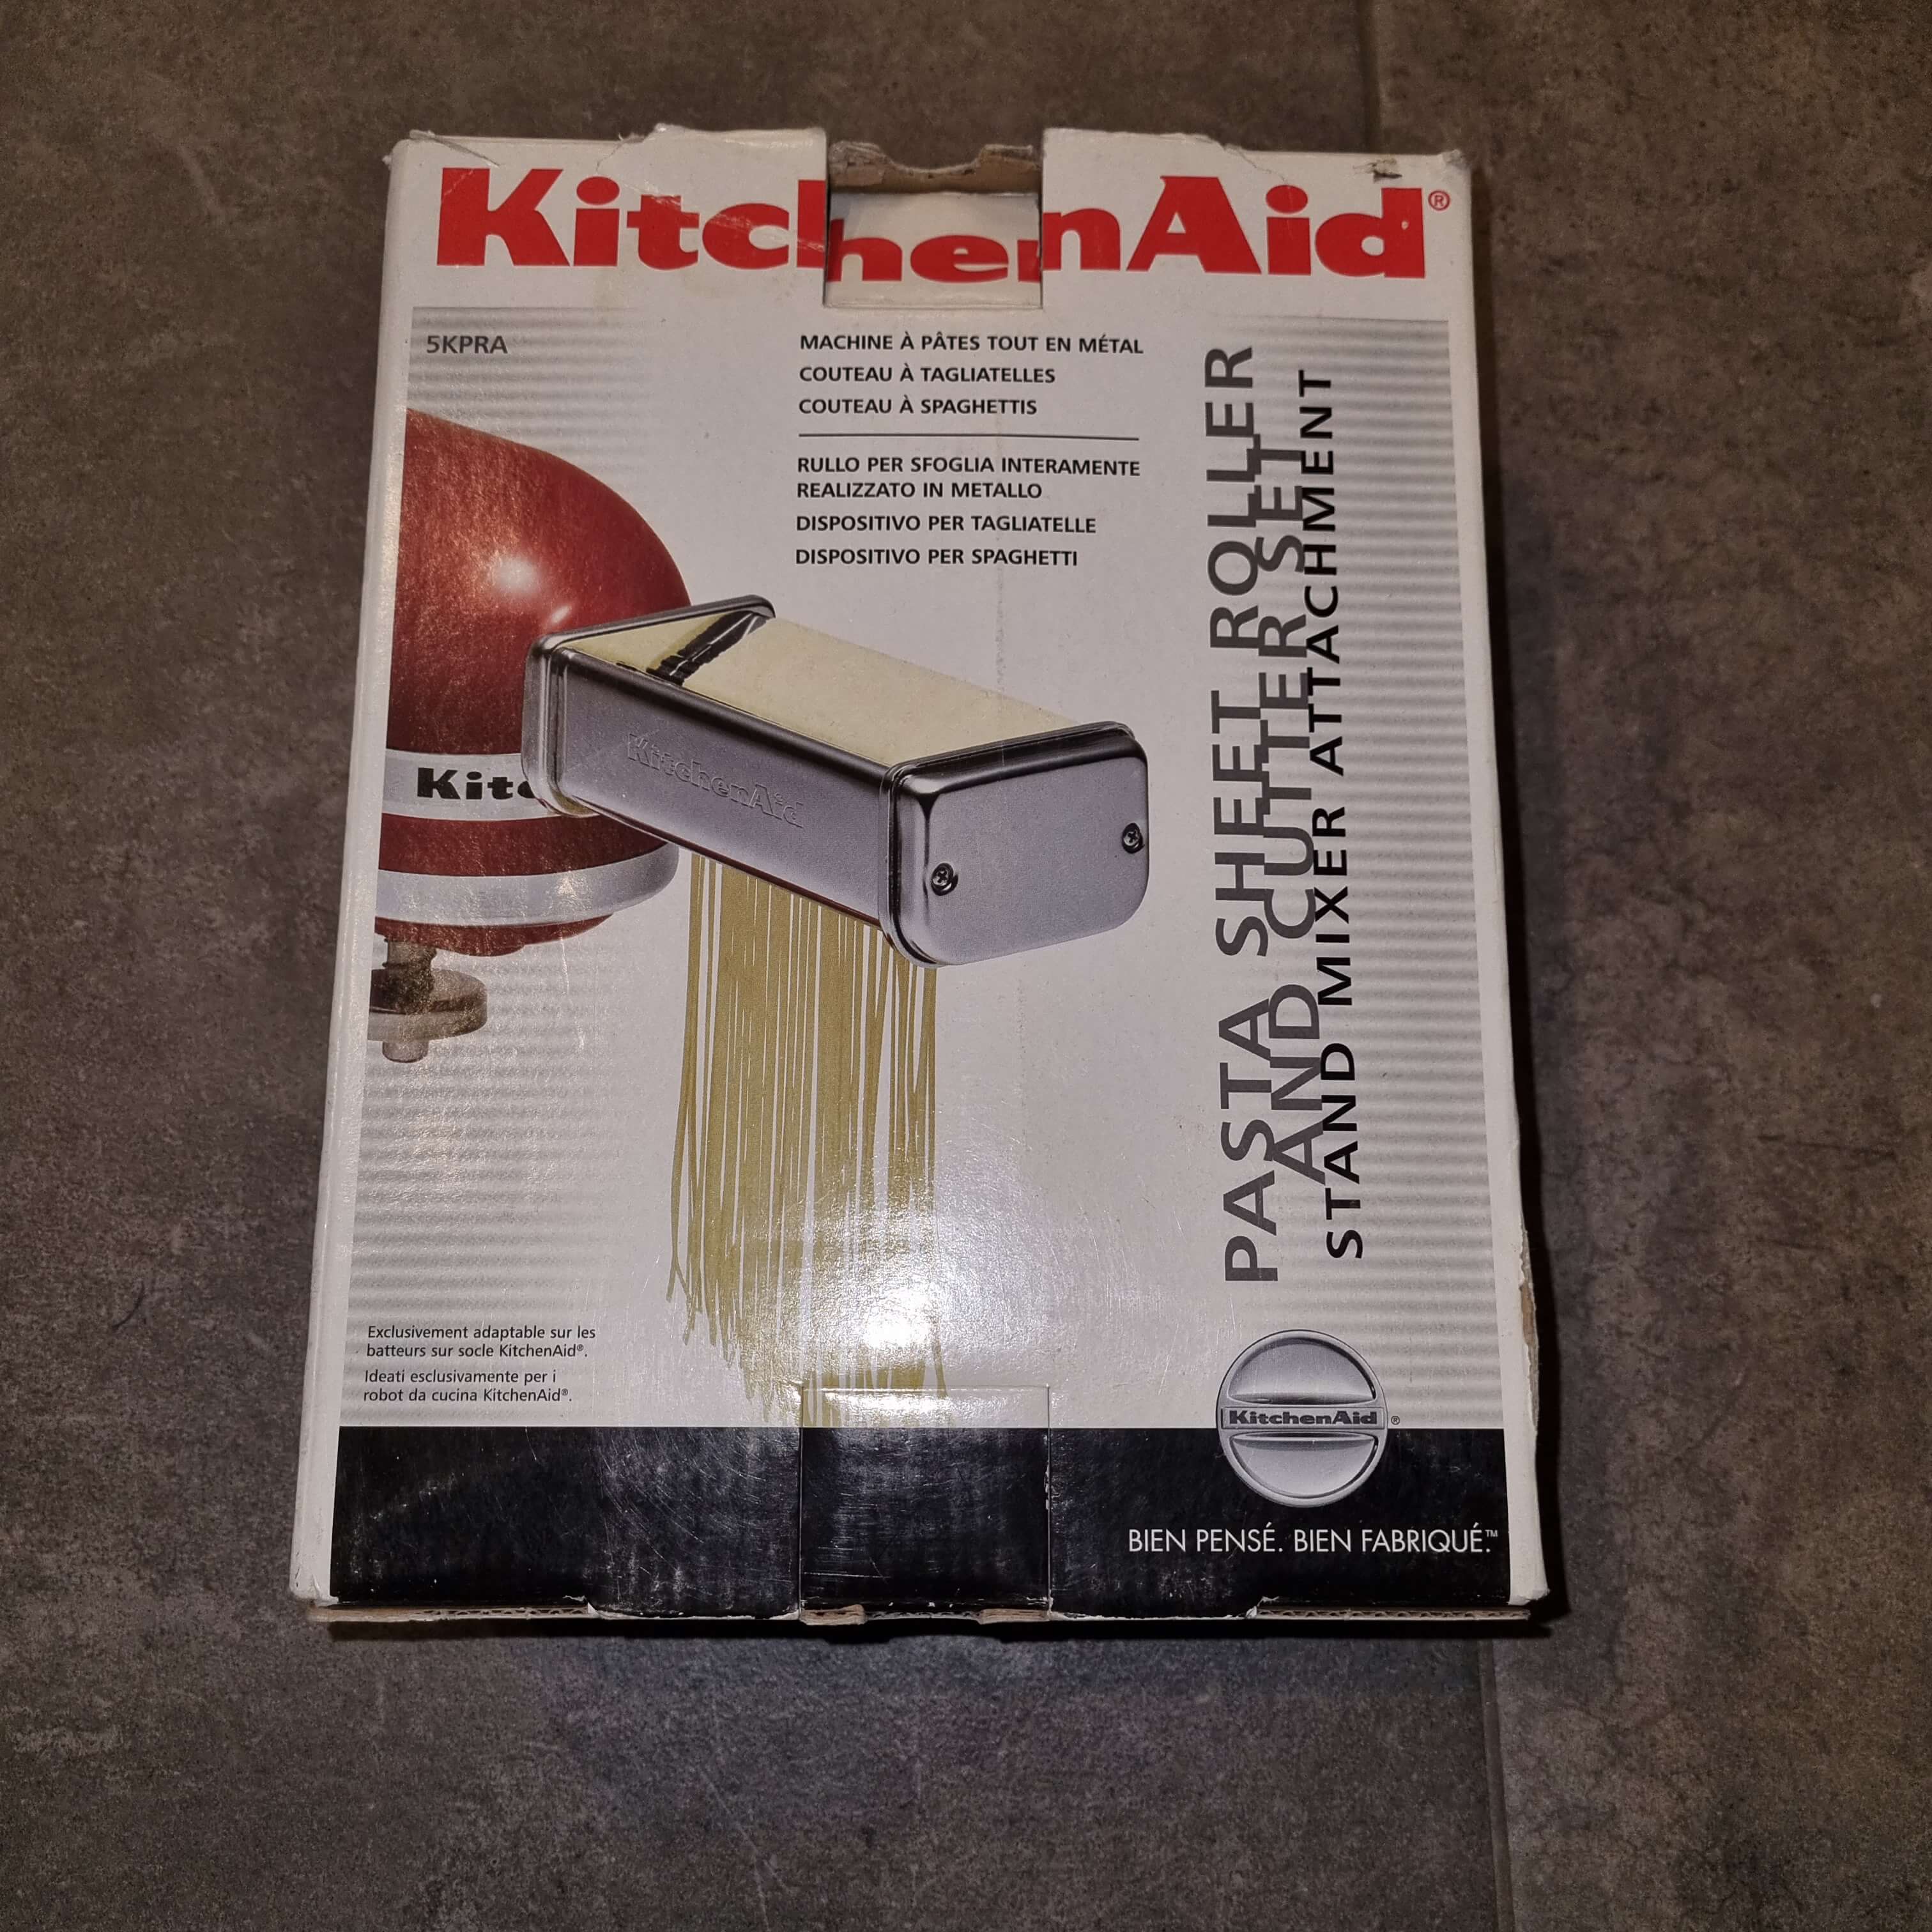 Kitchen Aid Nudelvorsatz / Pasta Sheet Roller and Cutter Set